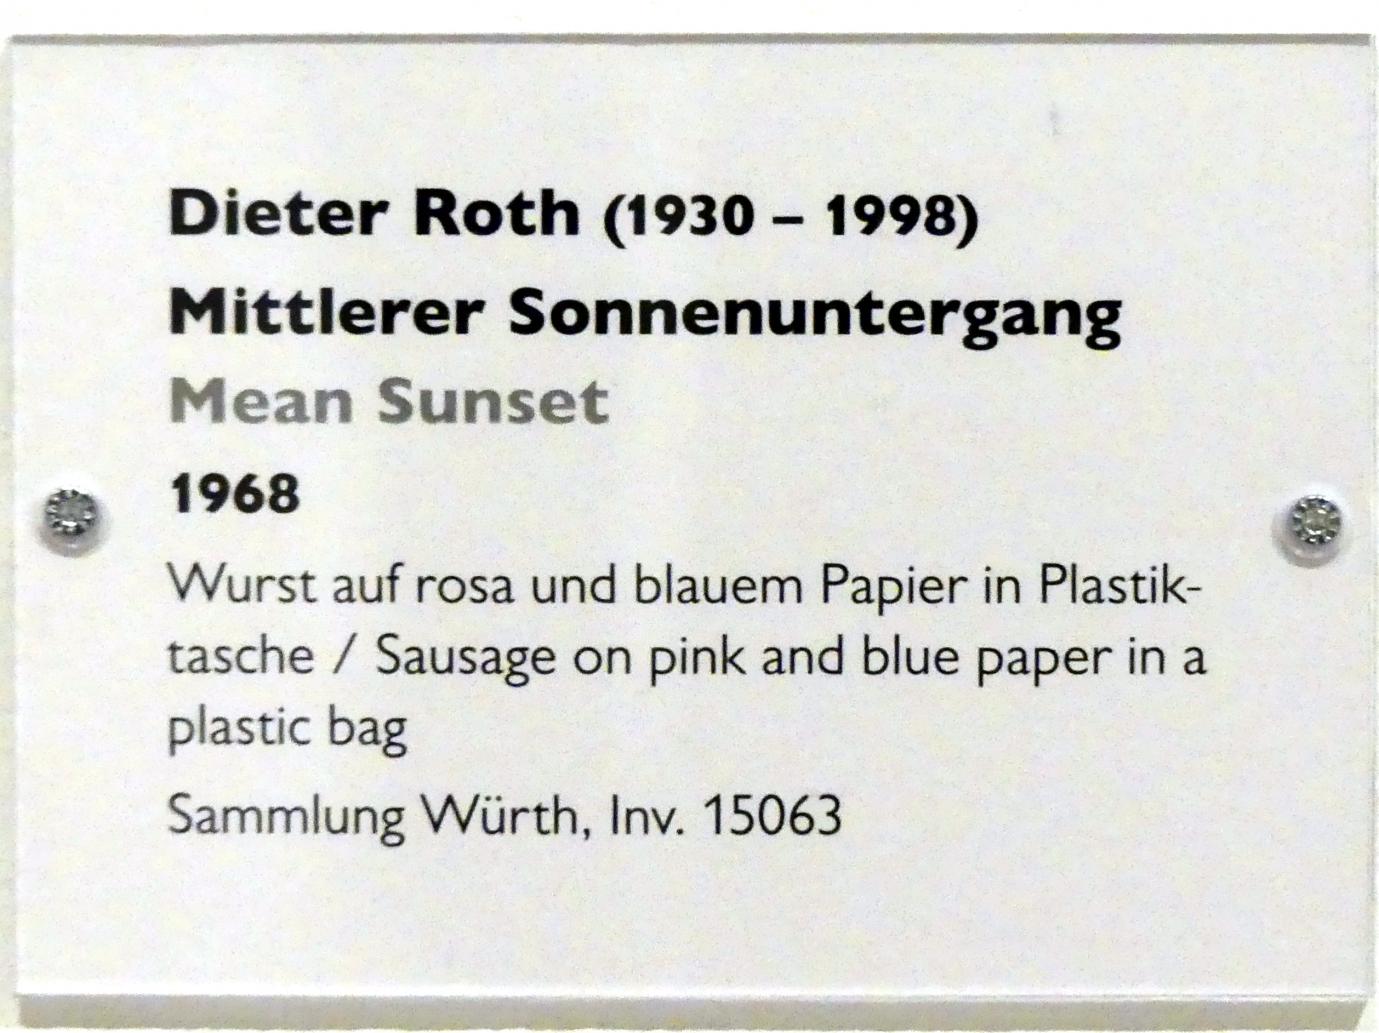 Dieter Roth (1965–1993), Mittlerer Sonnenuntergang, Schwäbisch Hall, Kunsthalle Würth, Ausstellung "Lust auf mehr" vom 30.09.2019 - 20.09.2020, Erdgeschoss, 1968, Bild 3/3